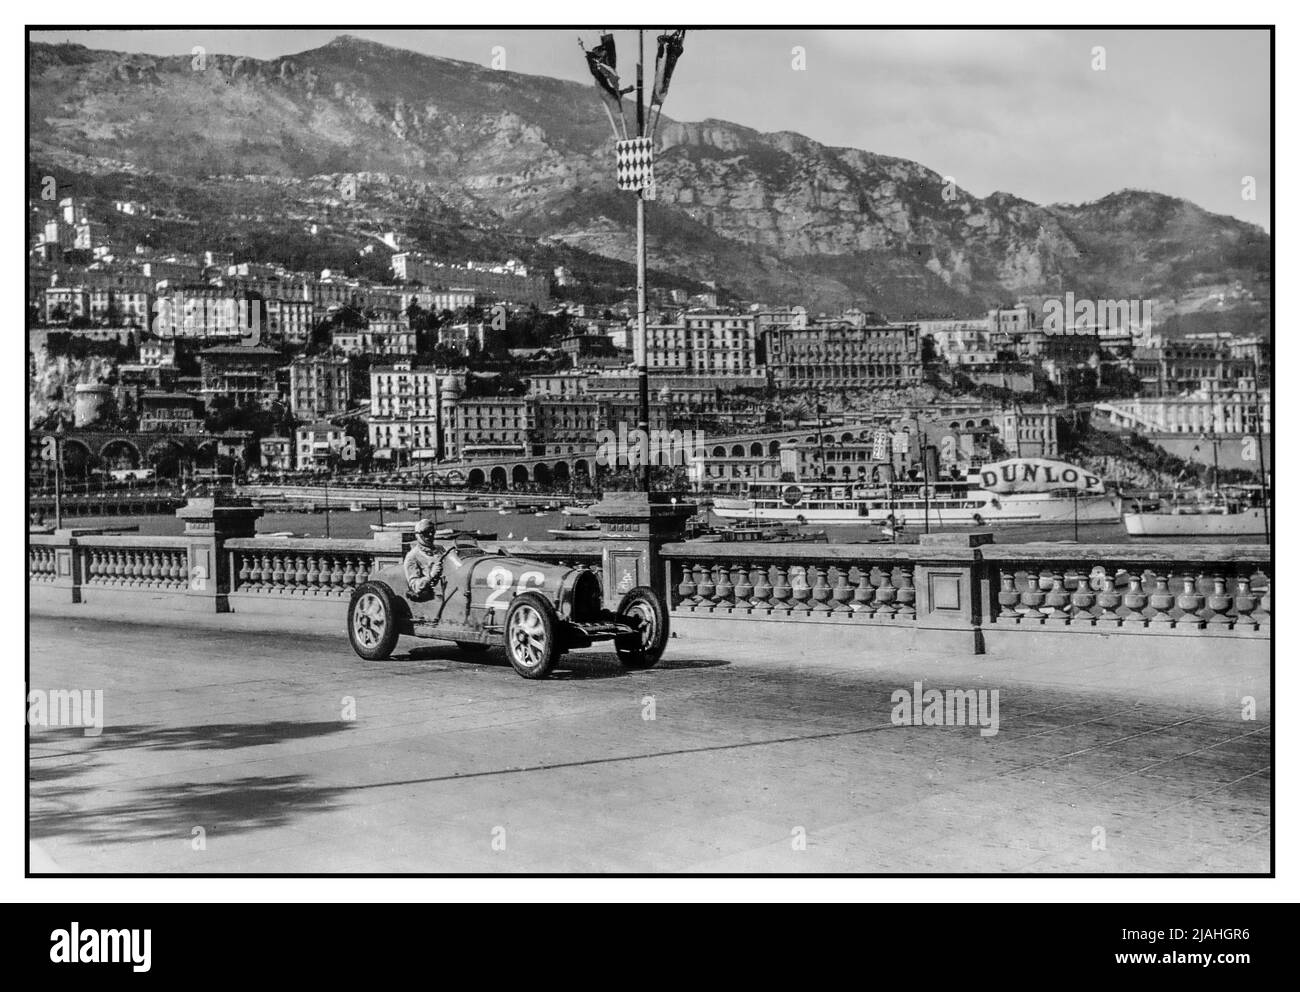 Grand Prix de Monaco 1931 avec Achille Varzi au volant d'une usine Bugatti numéro 26 avec le port de Monaco derrière. Le Grand Prix de Monaco 1931 était une course automobile de Grand Prix qui s'est déroulée sur le circuit de Monaco le 19 avril 1931. Avec 16 Bugattis dans un peloton de 23 voitures, l'événement était proche d'être une course monomarque. Parmi les 16, il y avait quatre types 51 pilotés par le monégasque Louis Chiron, l'italien Achille Varzi et les français Albert Divo et Guy Bouriat. Banque D'Images